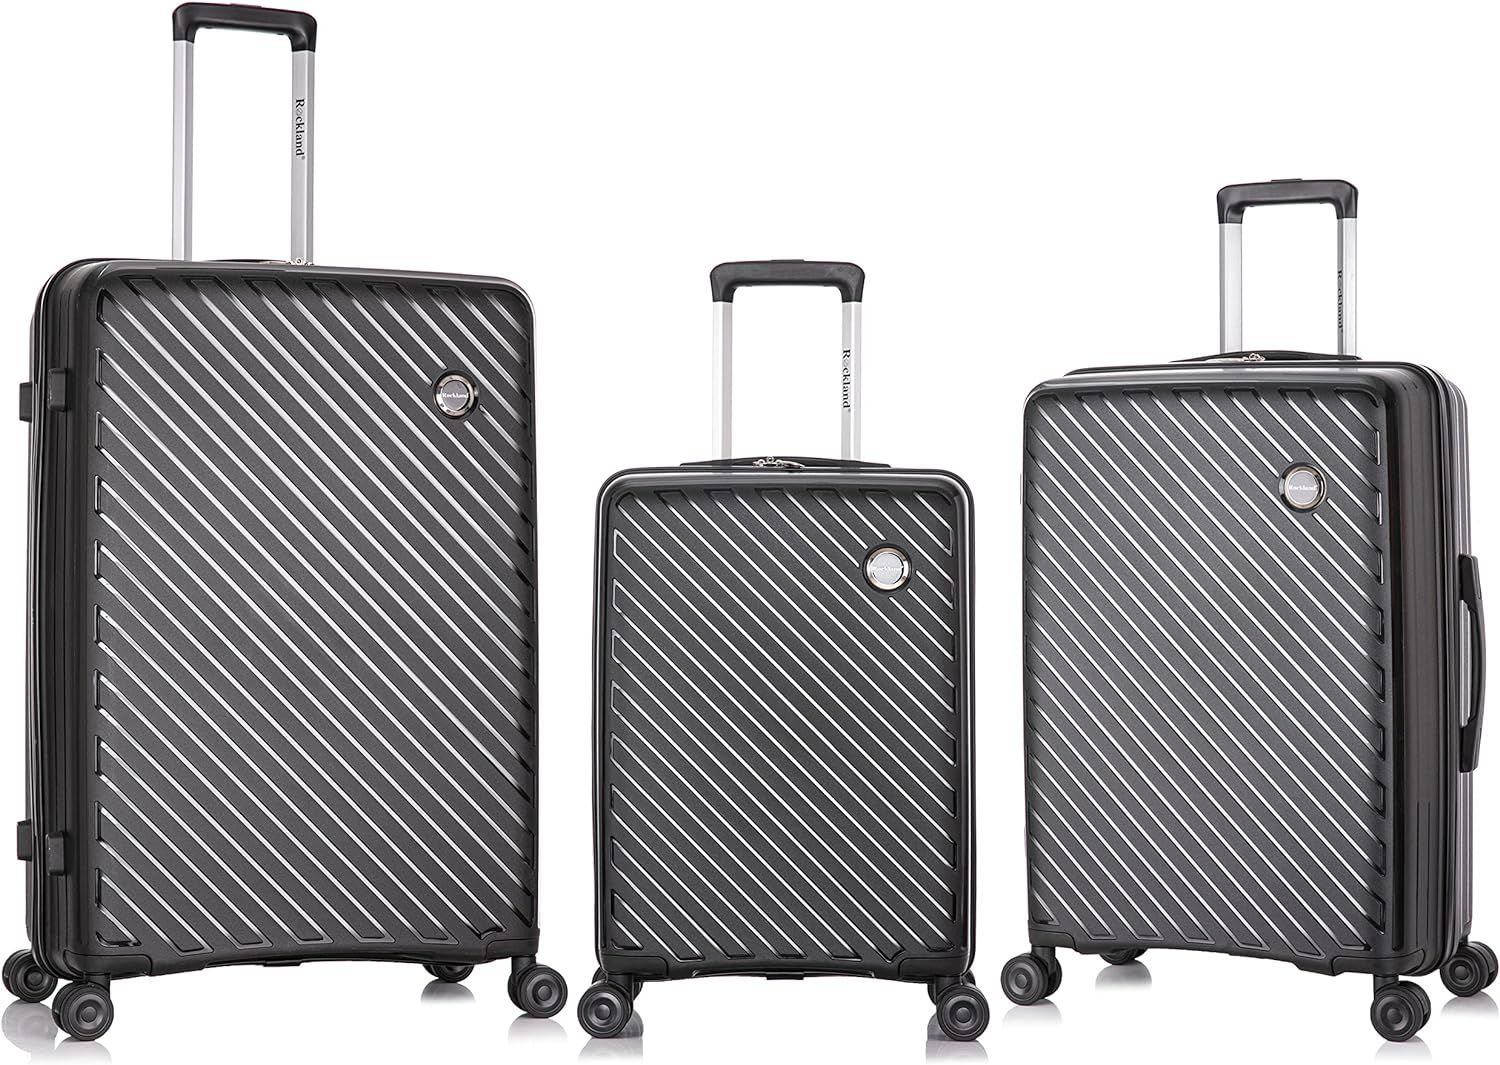 Rockland Prague Hardside Luggage with Spinner Wheels, Black, 3-Piece Set (20/24/28) | Amazon (US)